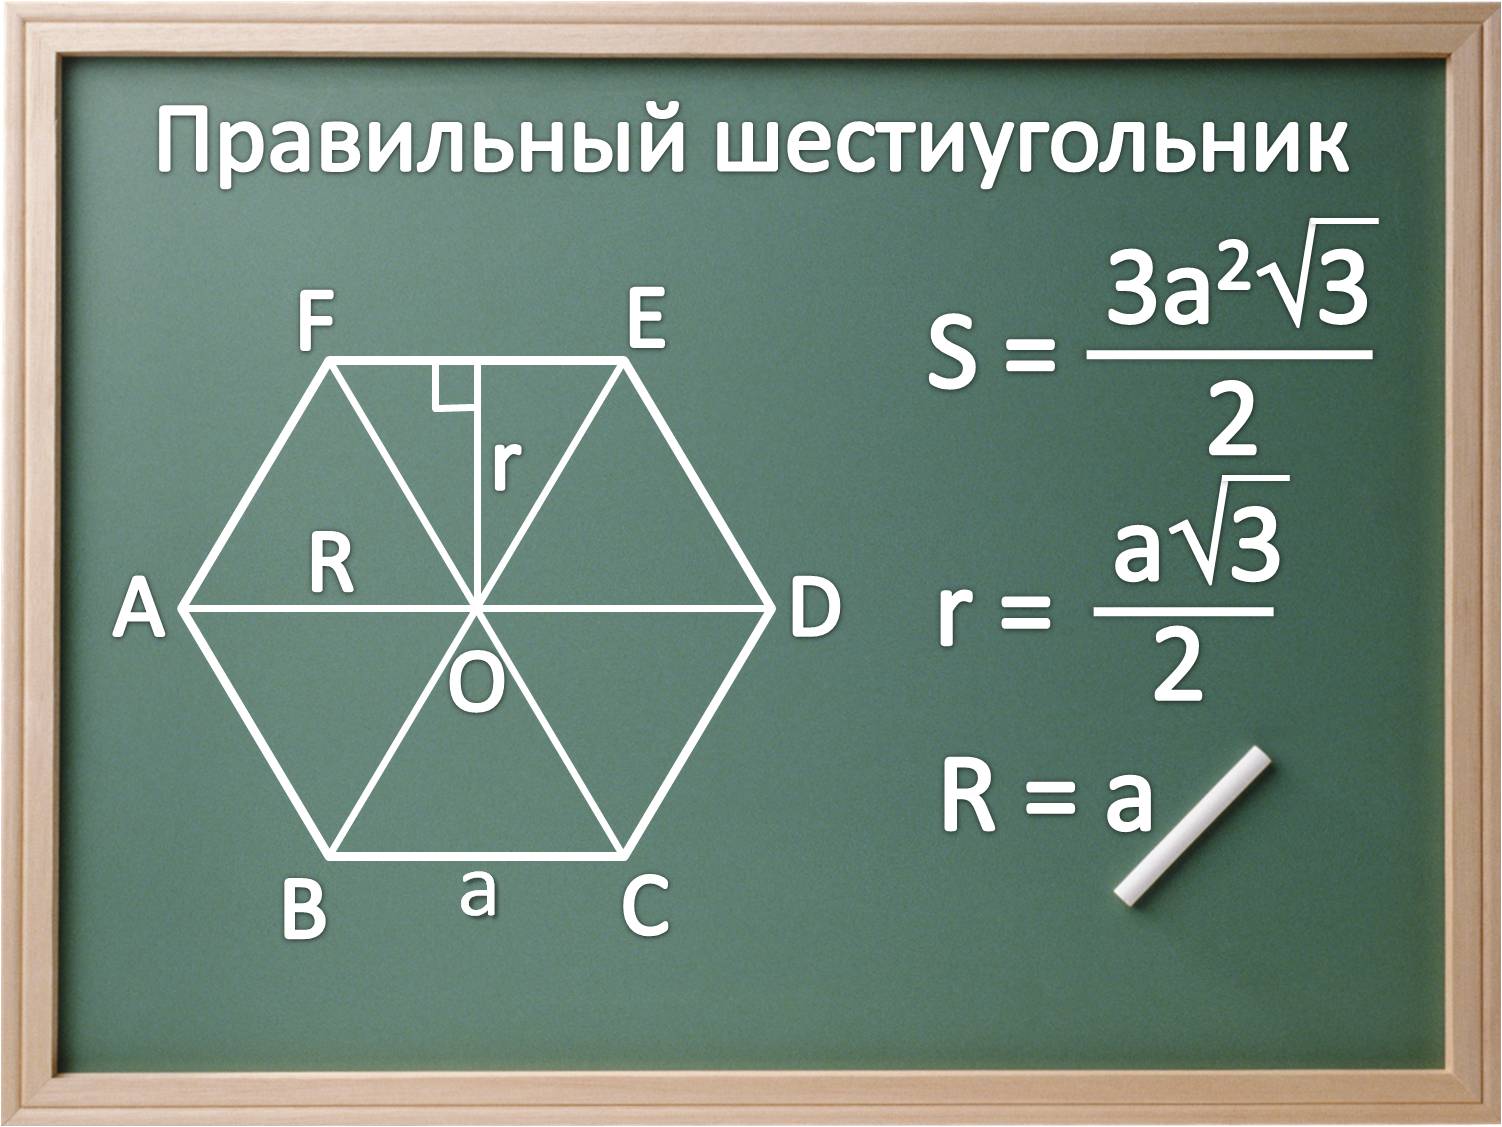 Площадь правильного шестиугольника со стороной 6. Площадь равностороннего шестиугольника. Площадь правильного шестиугольника. Площадь правильного шестиугольника формула. Площадь правильногтшестиугол Нмка.